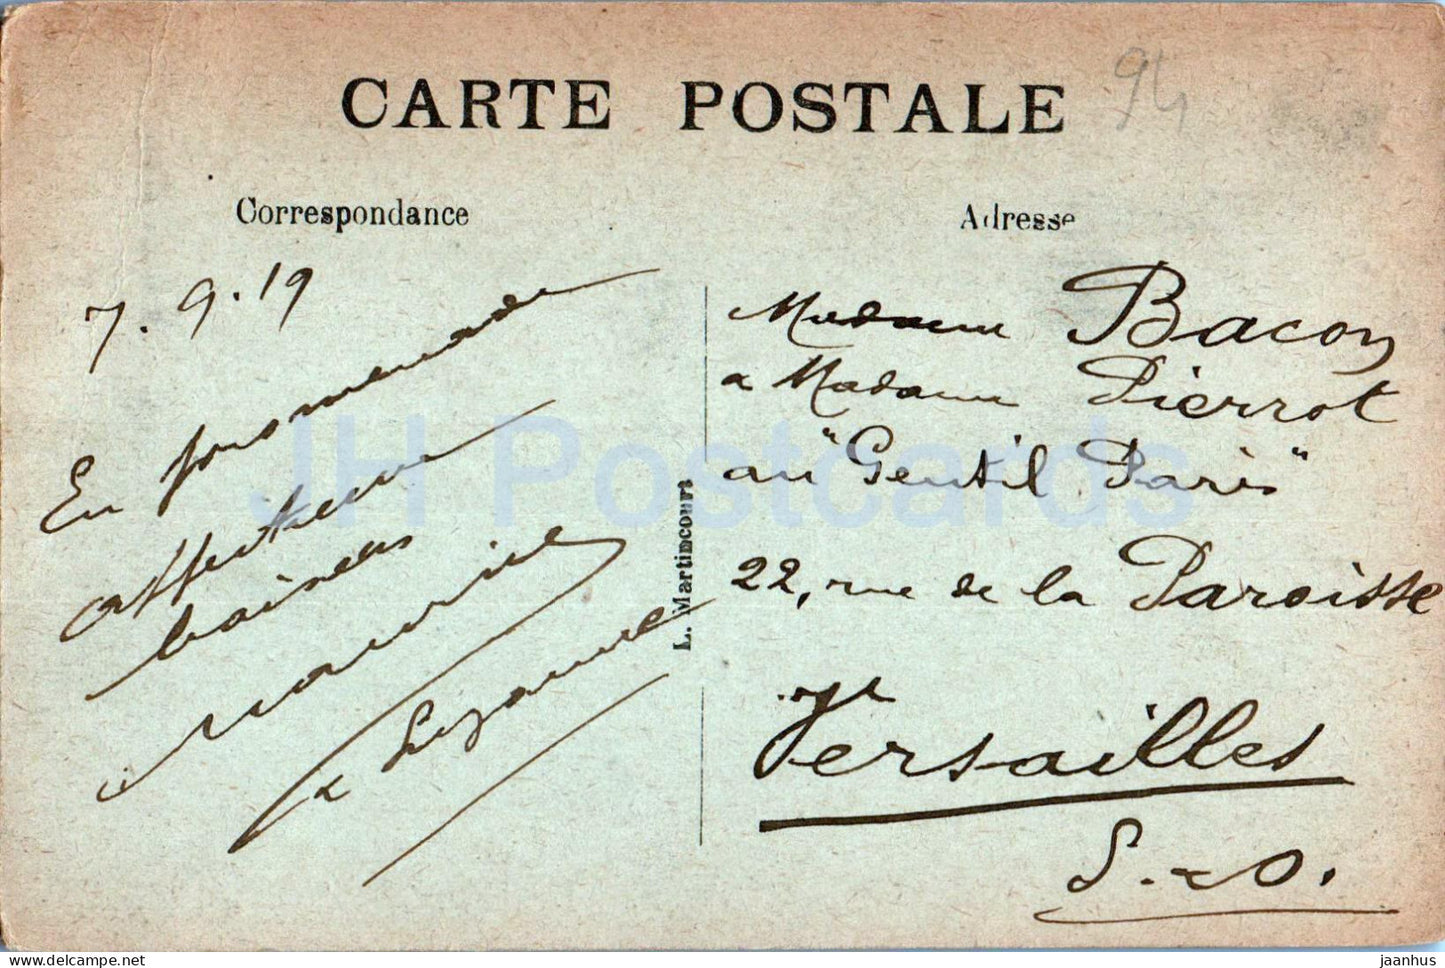 De la Varenne a Champigny - La Marne au pont du chemin de fer - Boot - 242 - alte Postkarte - 1919 - Frankreich - gebraucht 